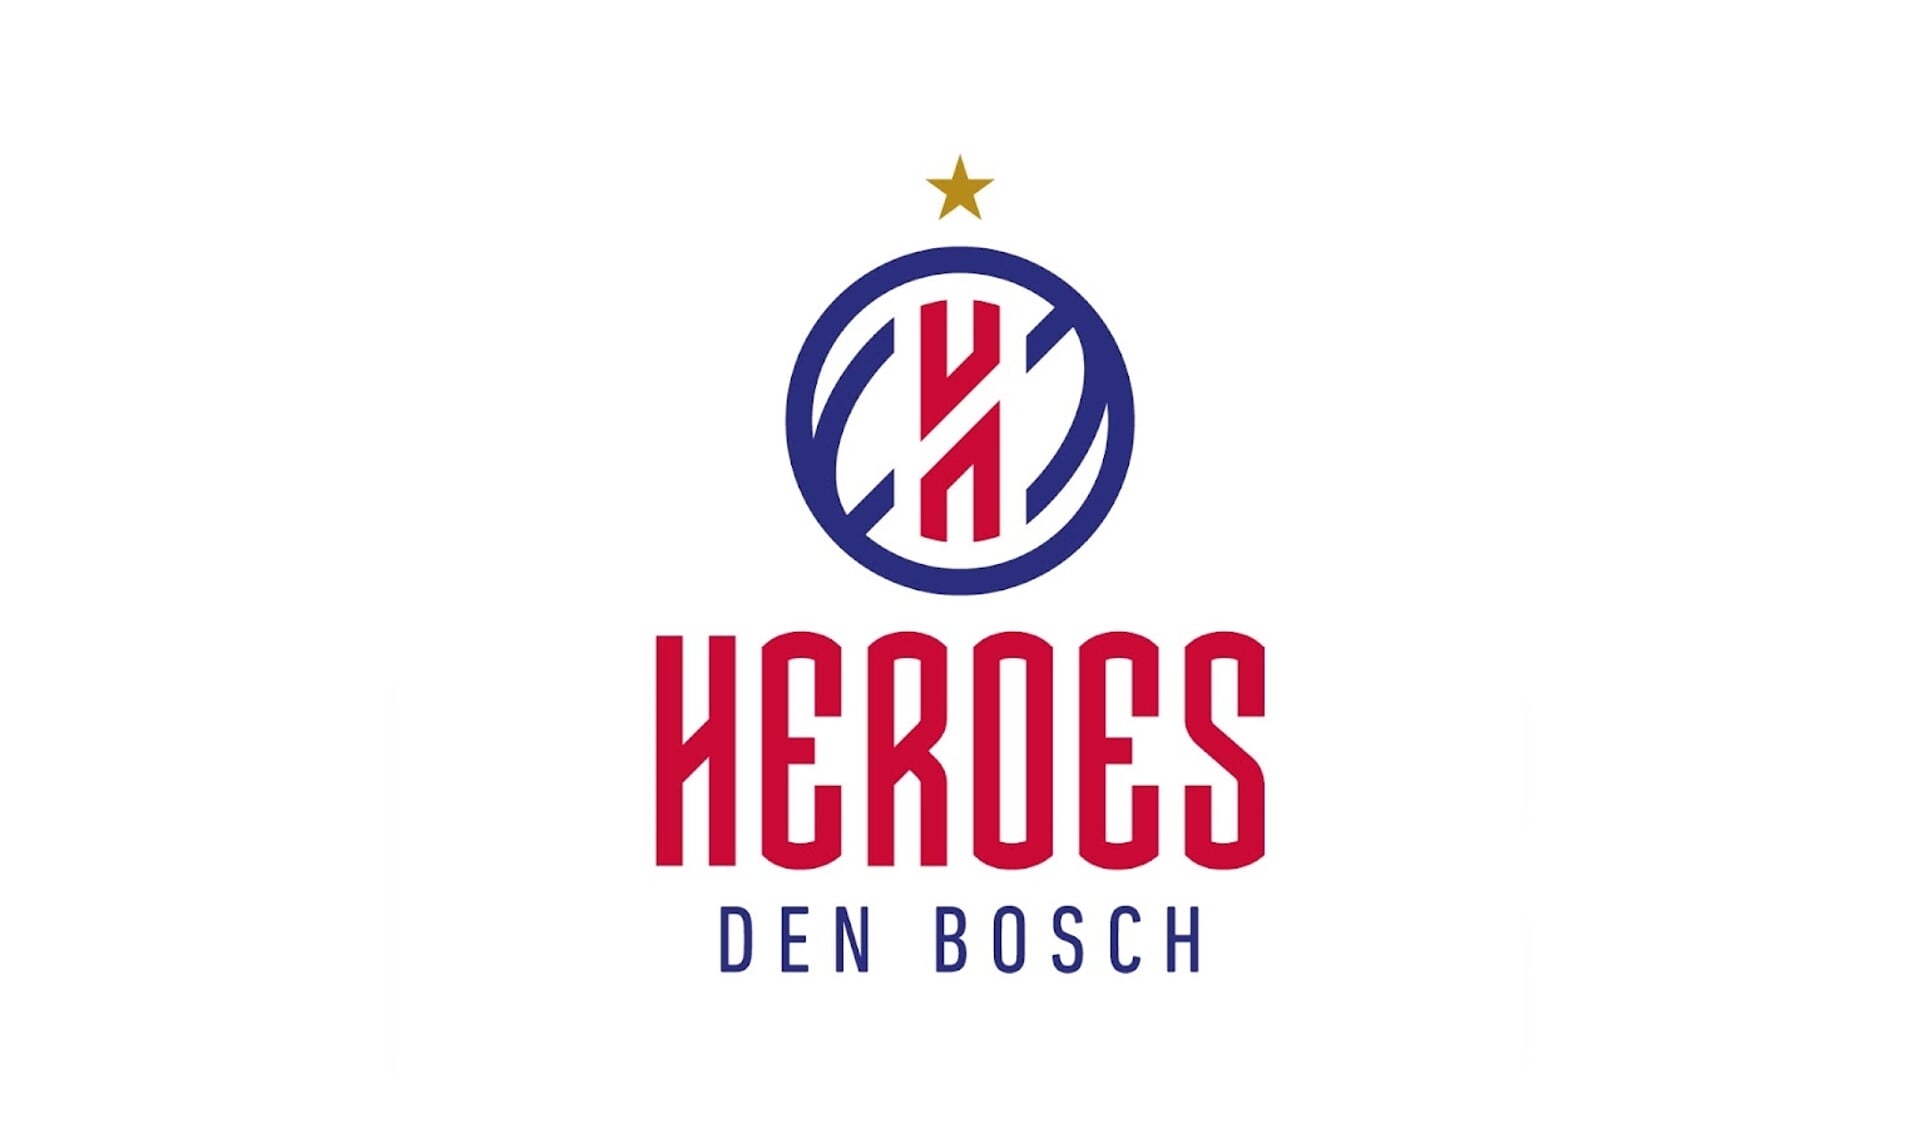 Heroes Den Bosch speelt zondag 20 maart de bekerfinale in Groningen.